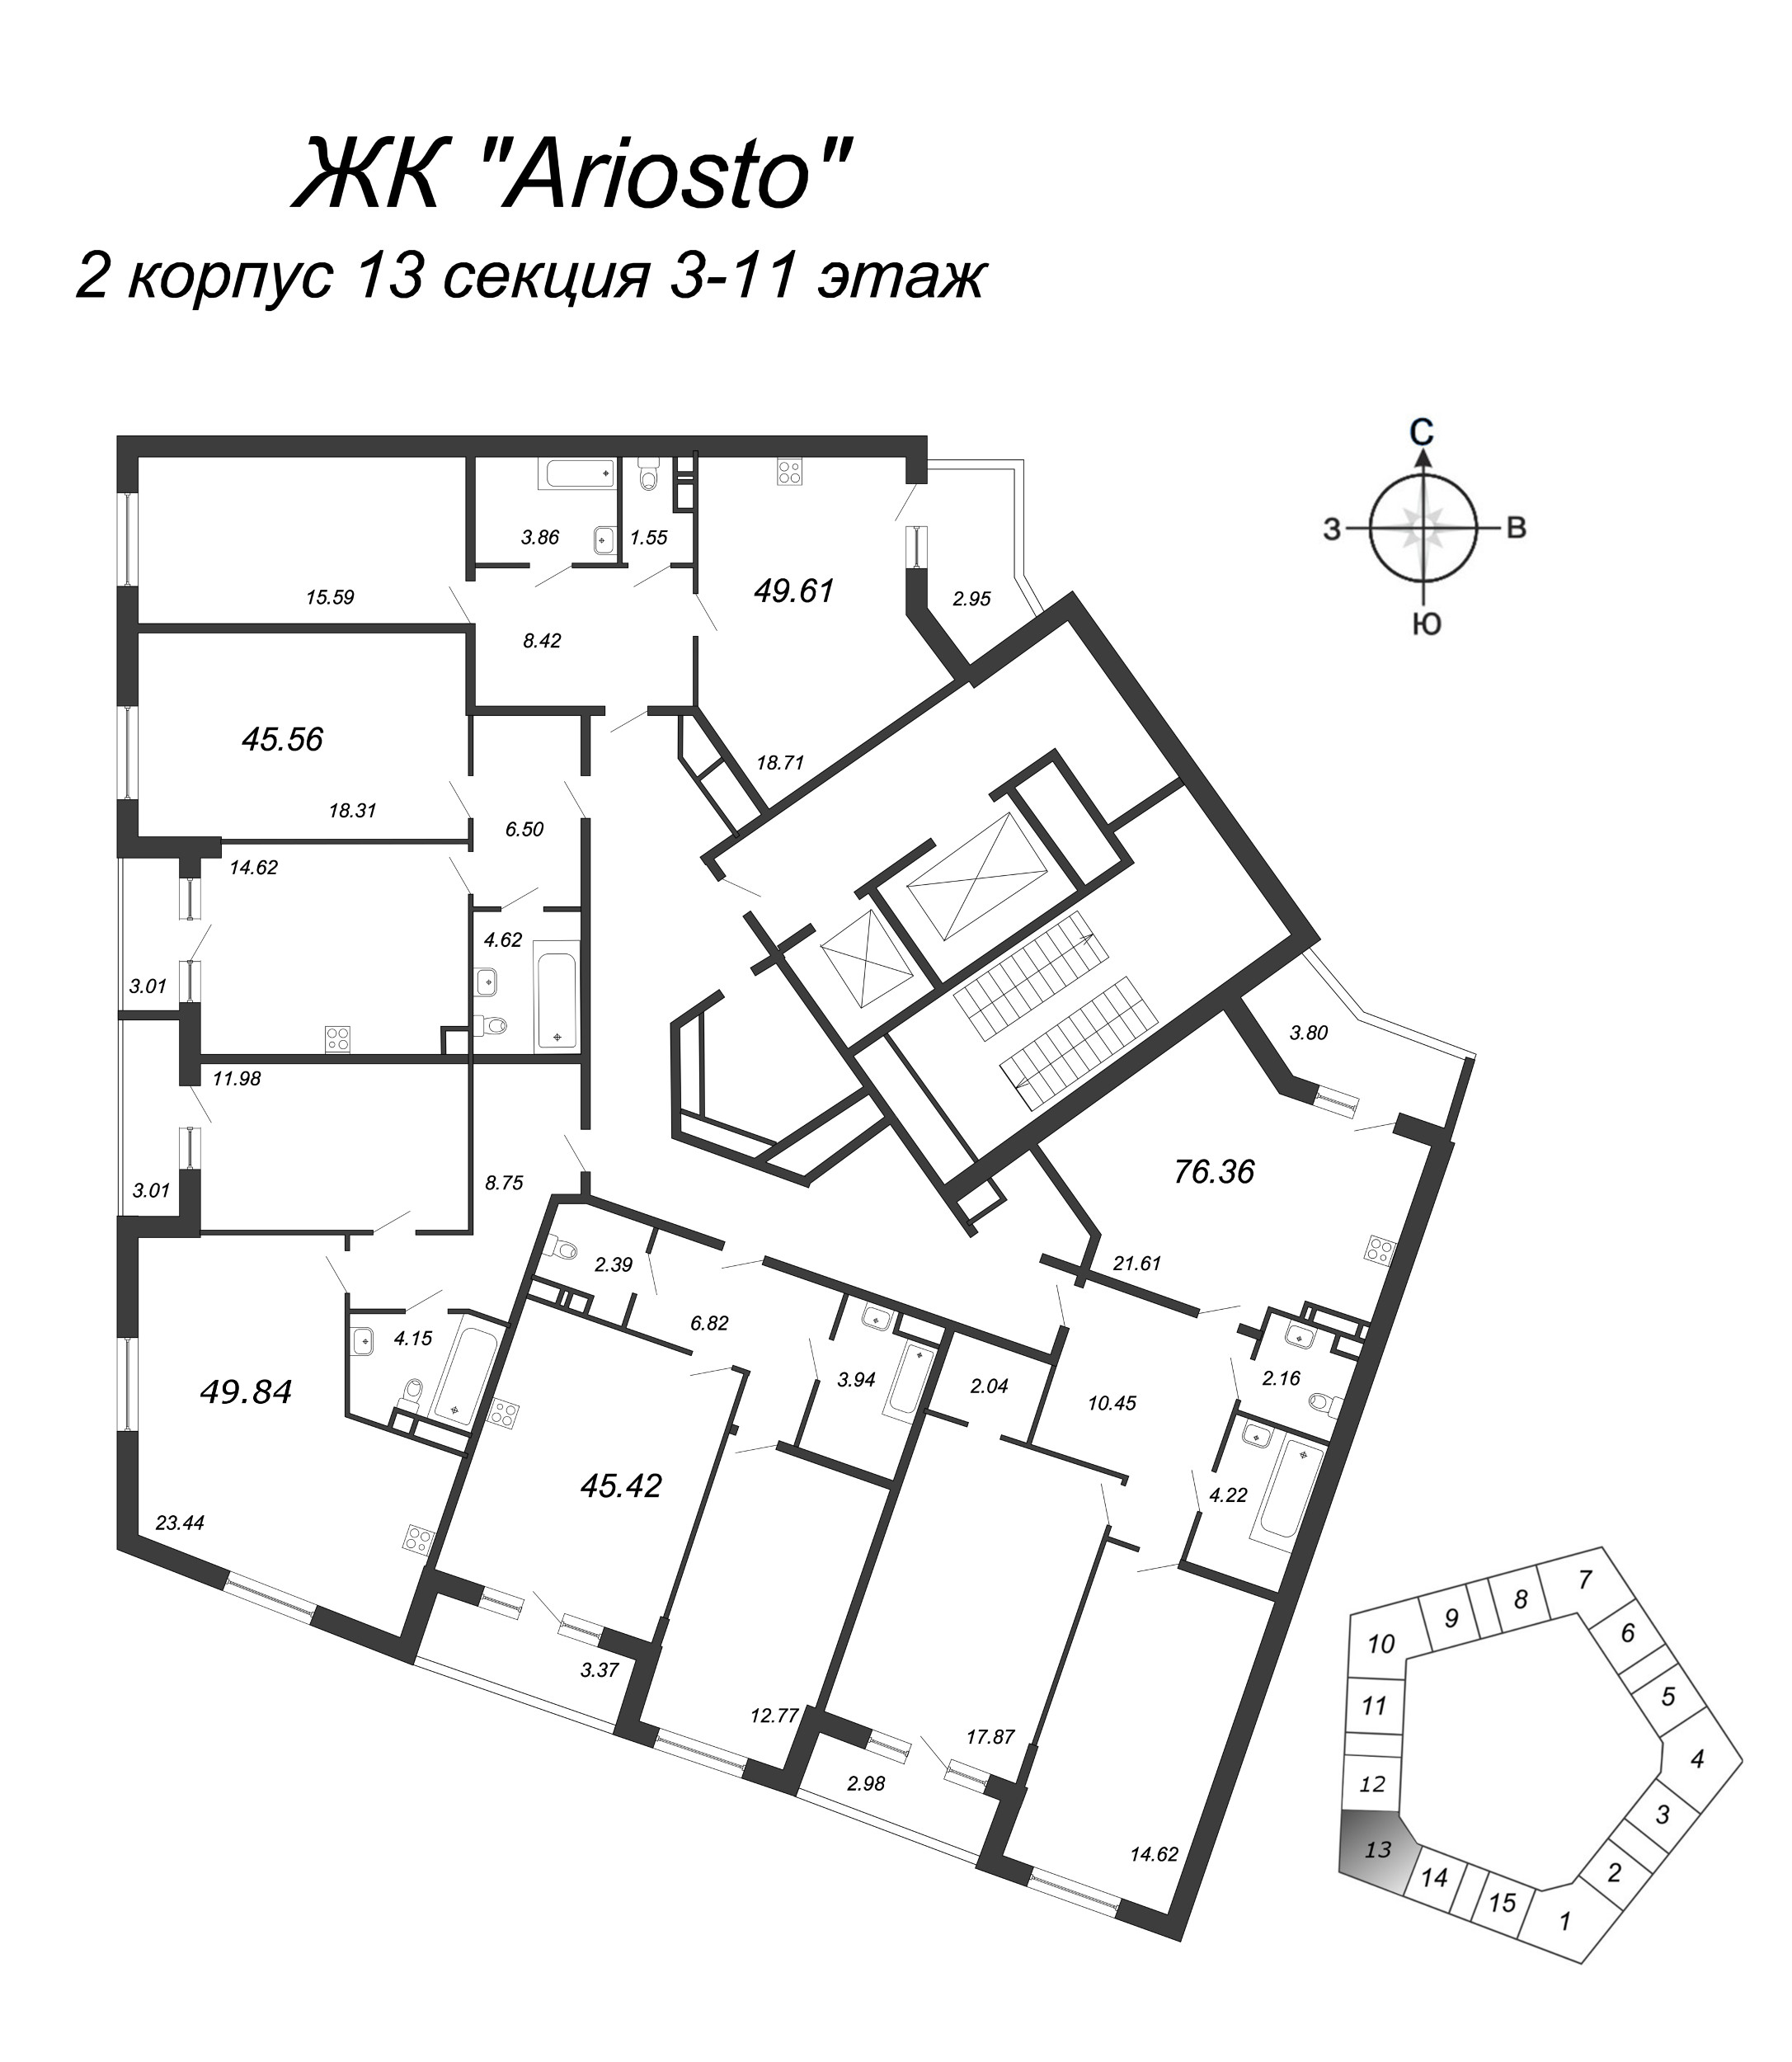 1-комнатная квартира, 45.56 м² в ЖК "Ariosto" - планировка этажа